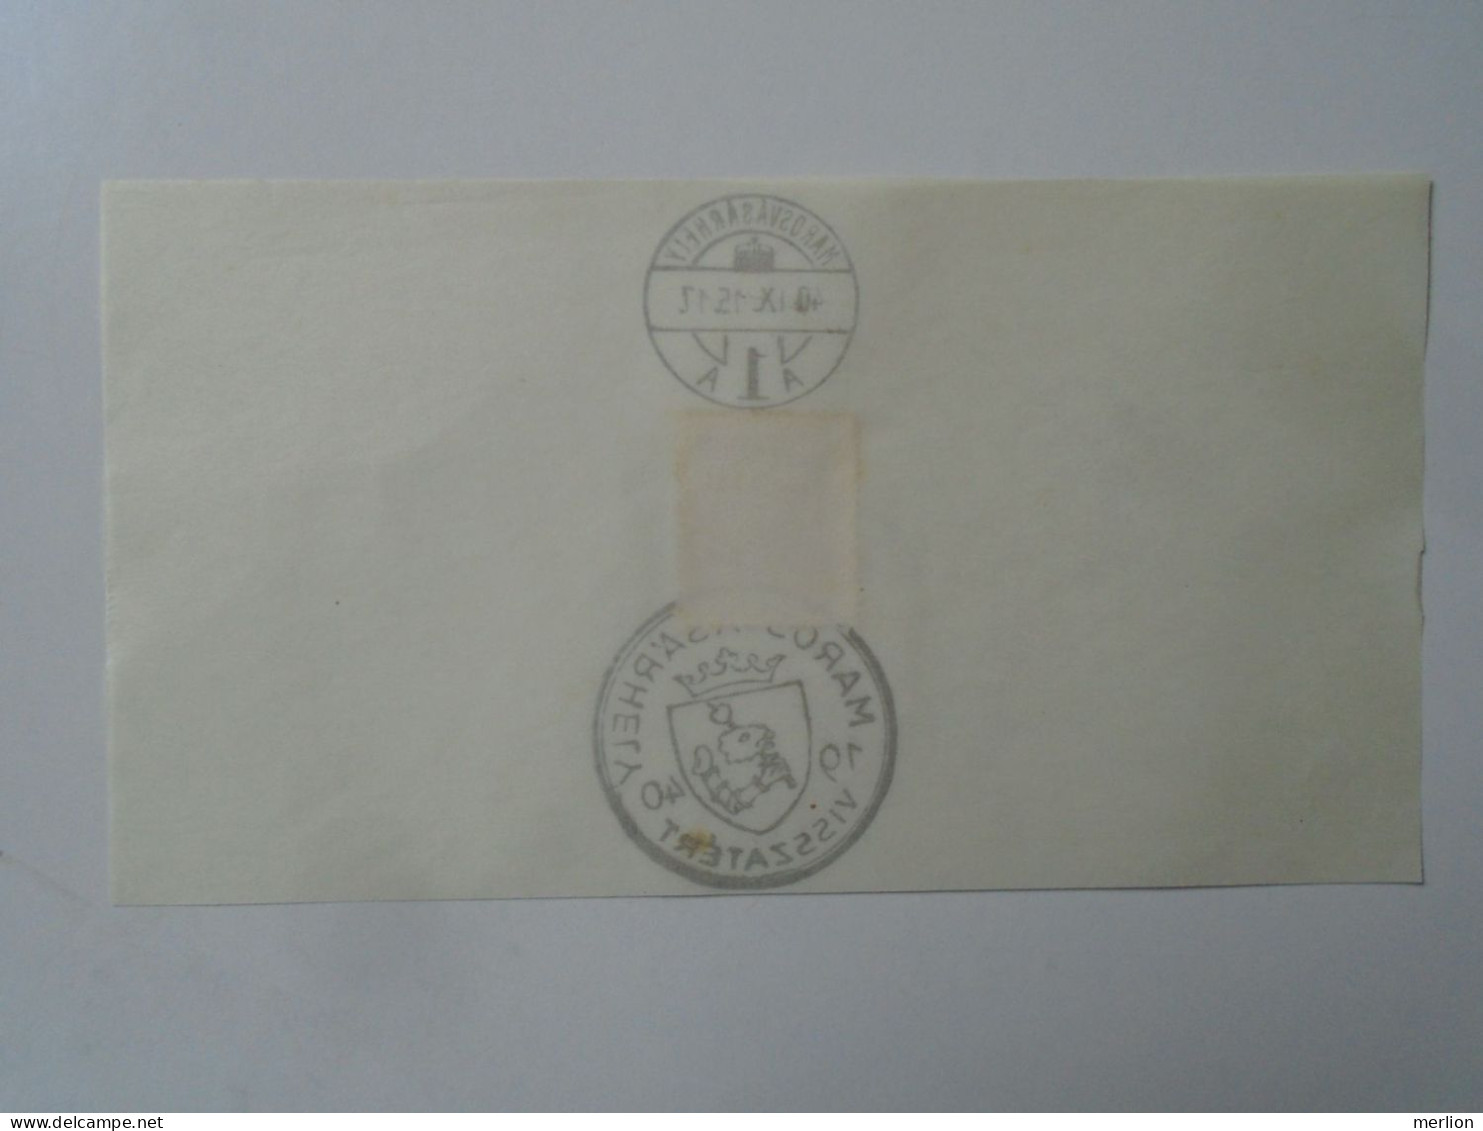 ZA451.54  Hungary -Marosvásárhely  Visszatért -Commemorative Postmark 1940 - Postmark Collection